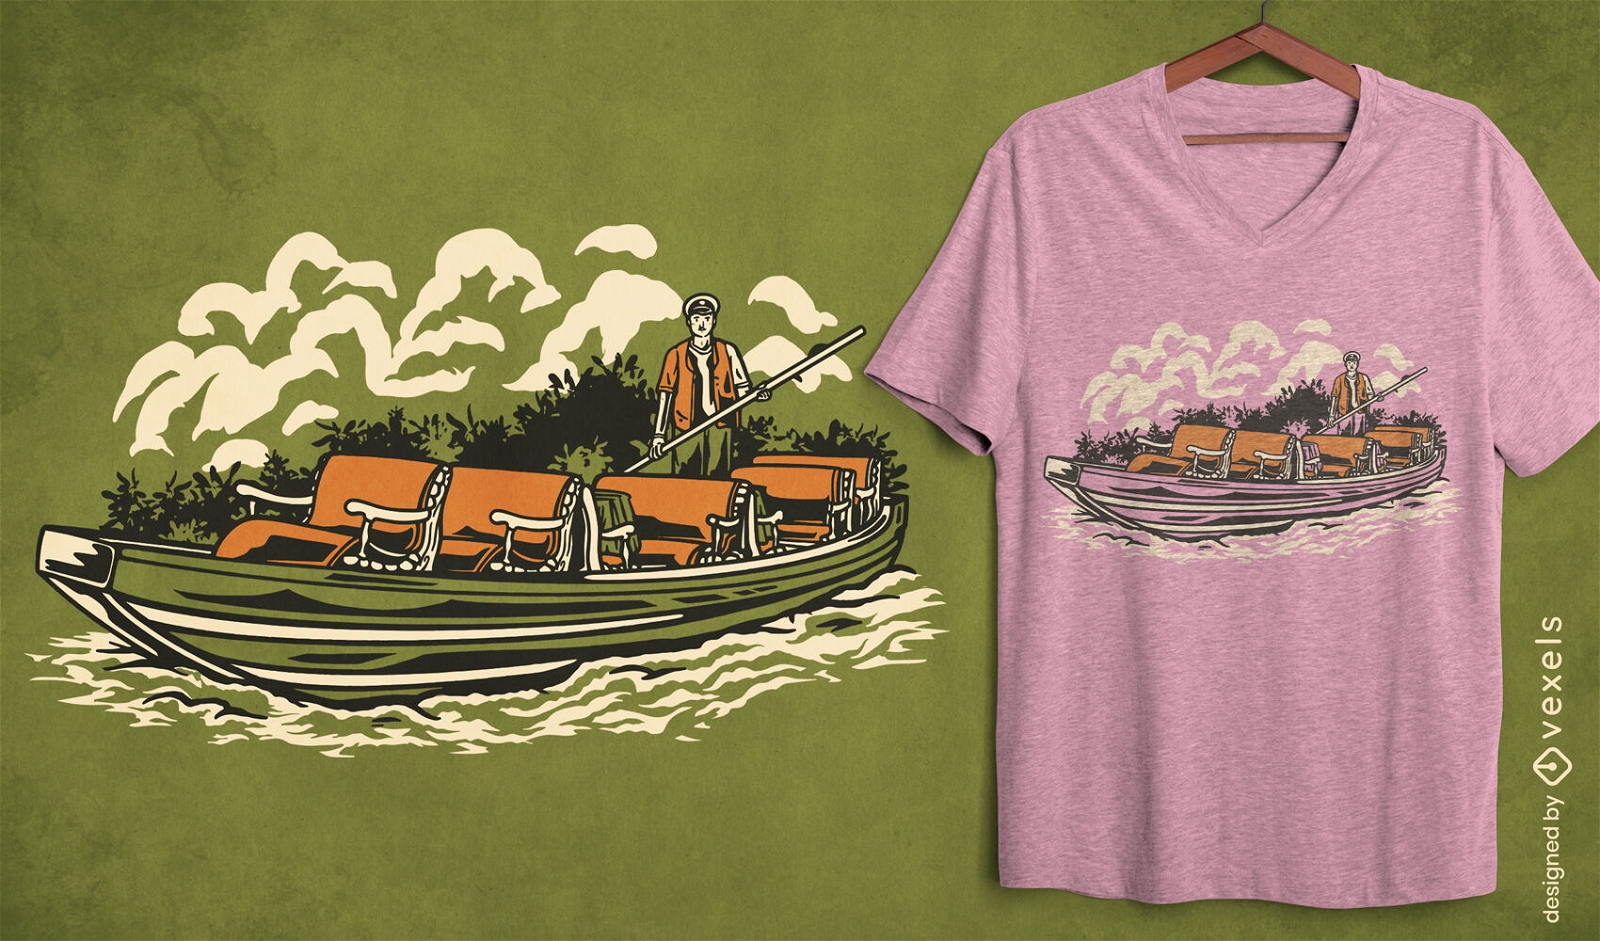 Deutsches Boot auf Fluss-T-Shirt-Design